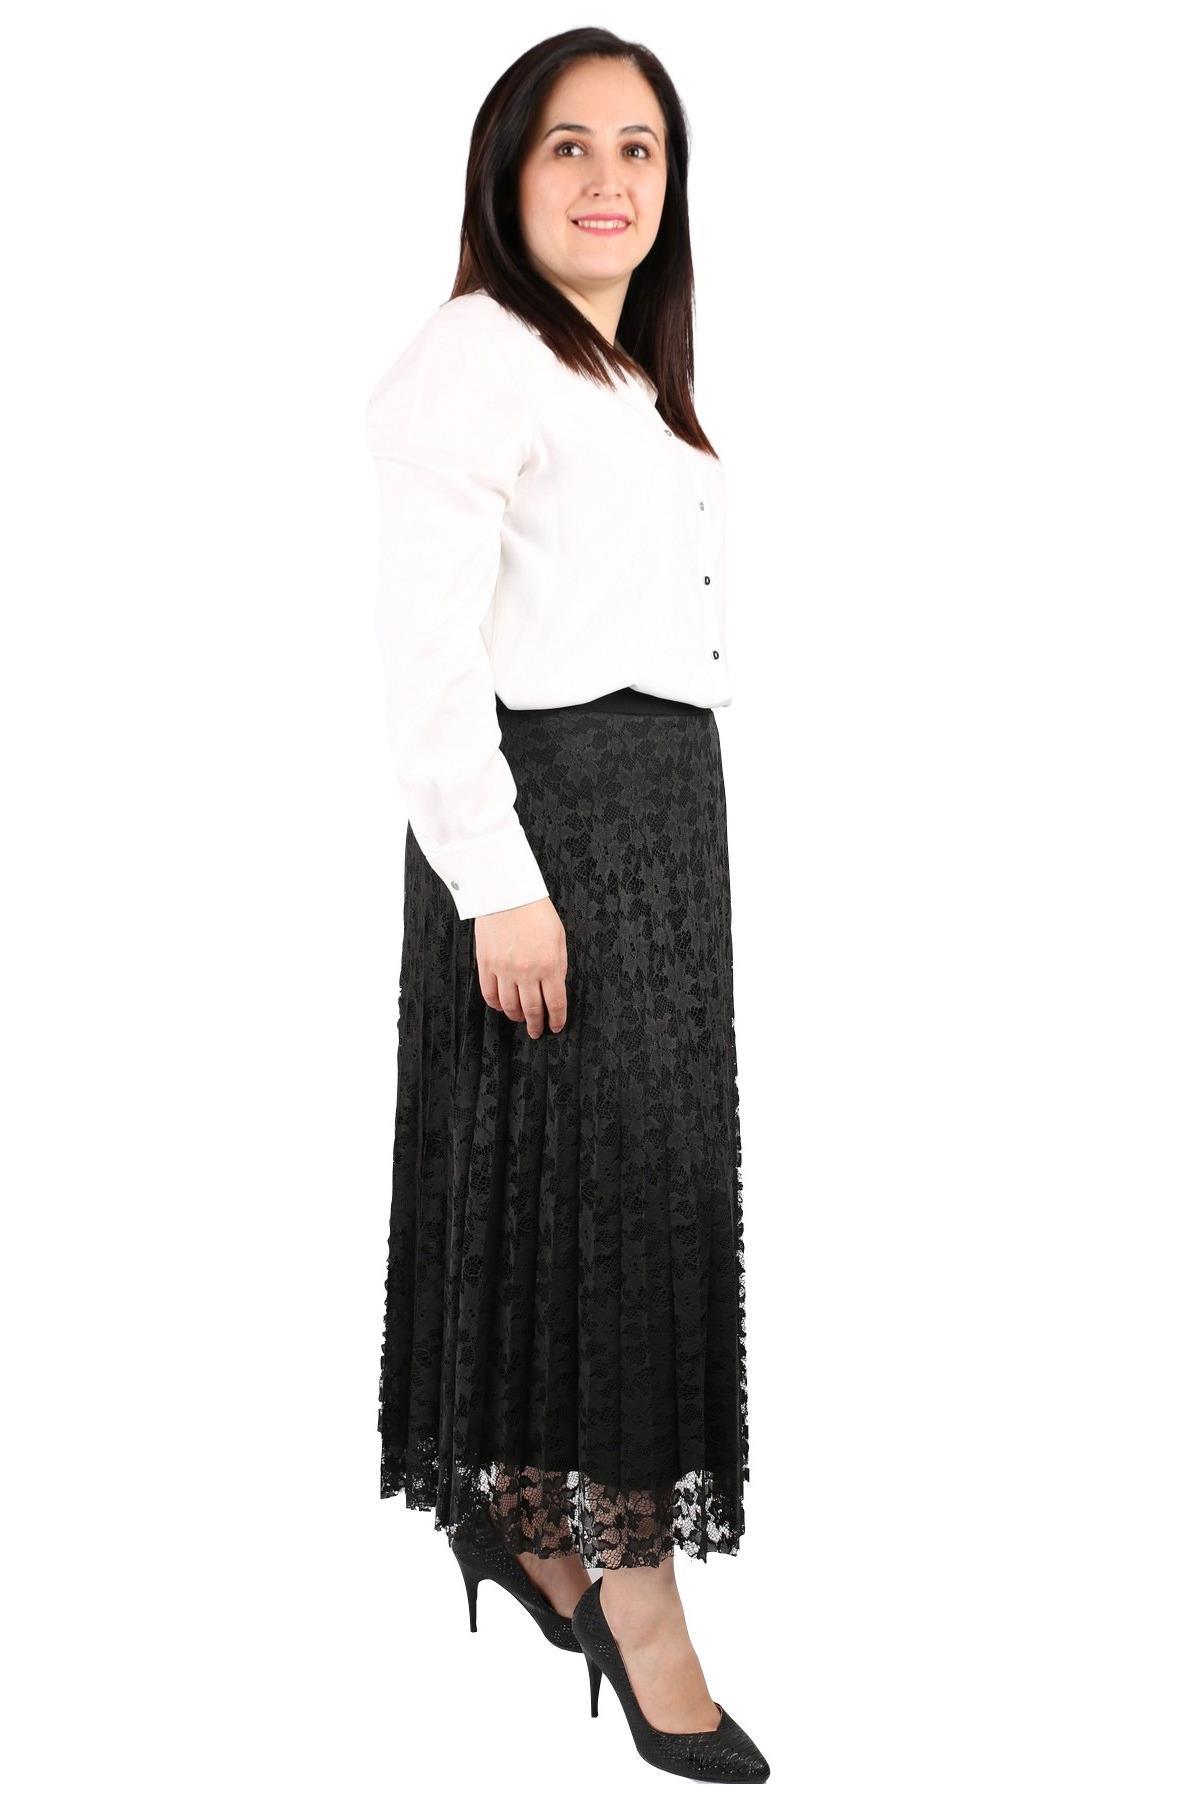 Fierte Kadın Etek Vlm123 Diz Altı Spor Haki Siyah Beyaz Bordo Alt Giyim